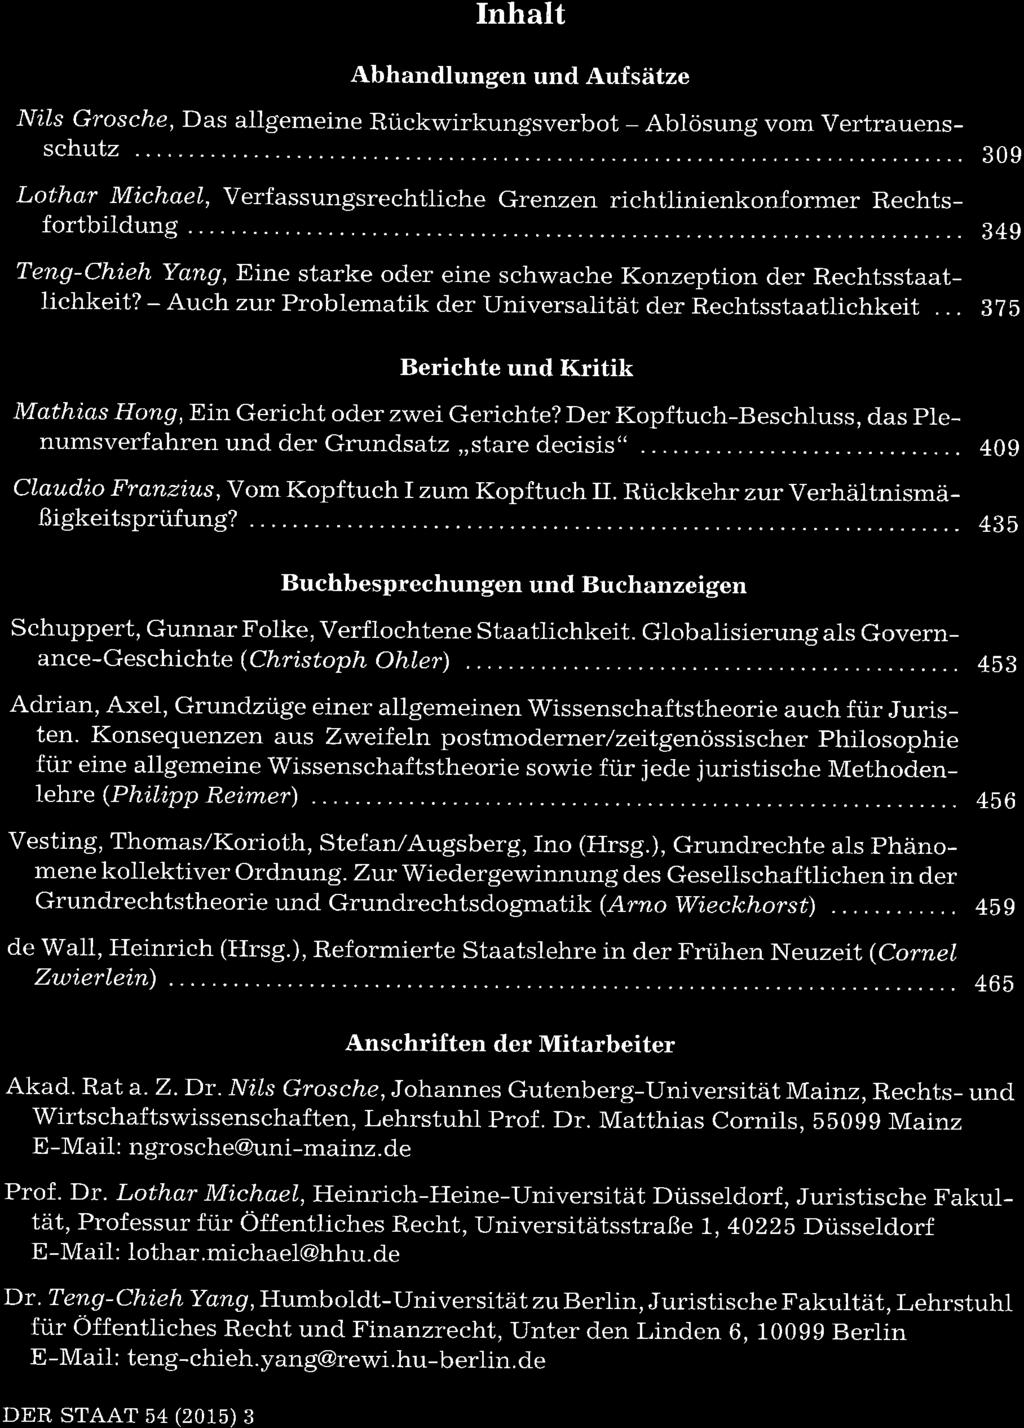 DER STAAT 54 (2015), ilr_rv Duncker & Humblot, 12165 Berlin Inhalt Abhandlungen und Aufsätze Nils Grosche, Das allgemeine Rückwirkungsverbot - Ablösung vom Vertrauensschutz Lothar Mitchael,